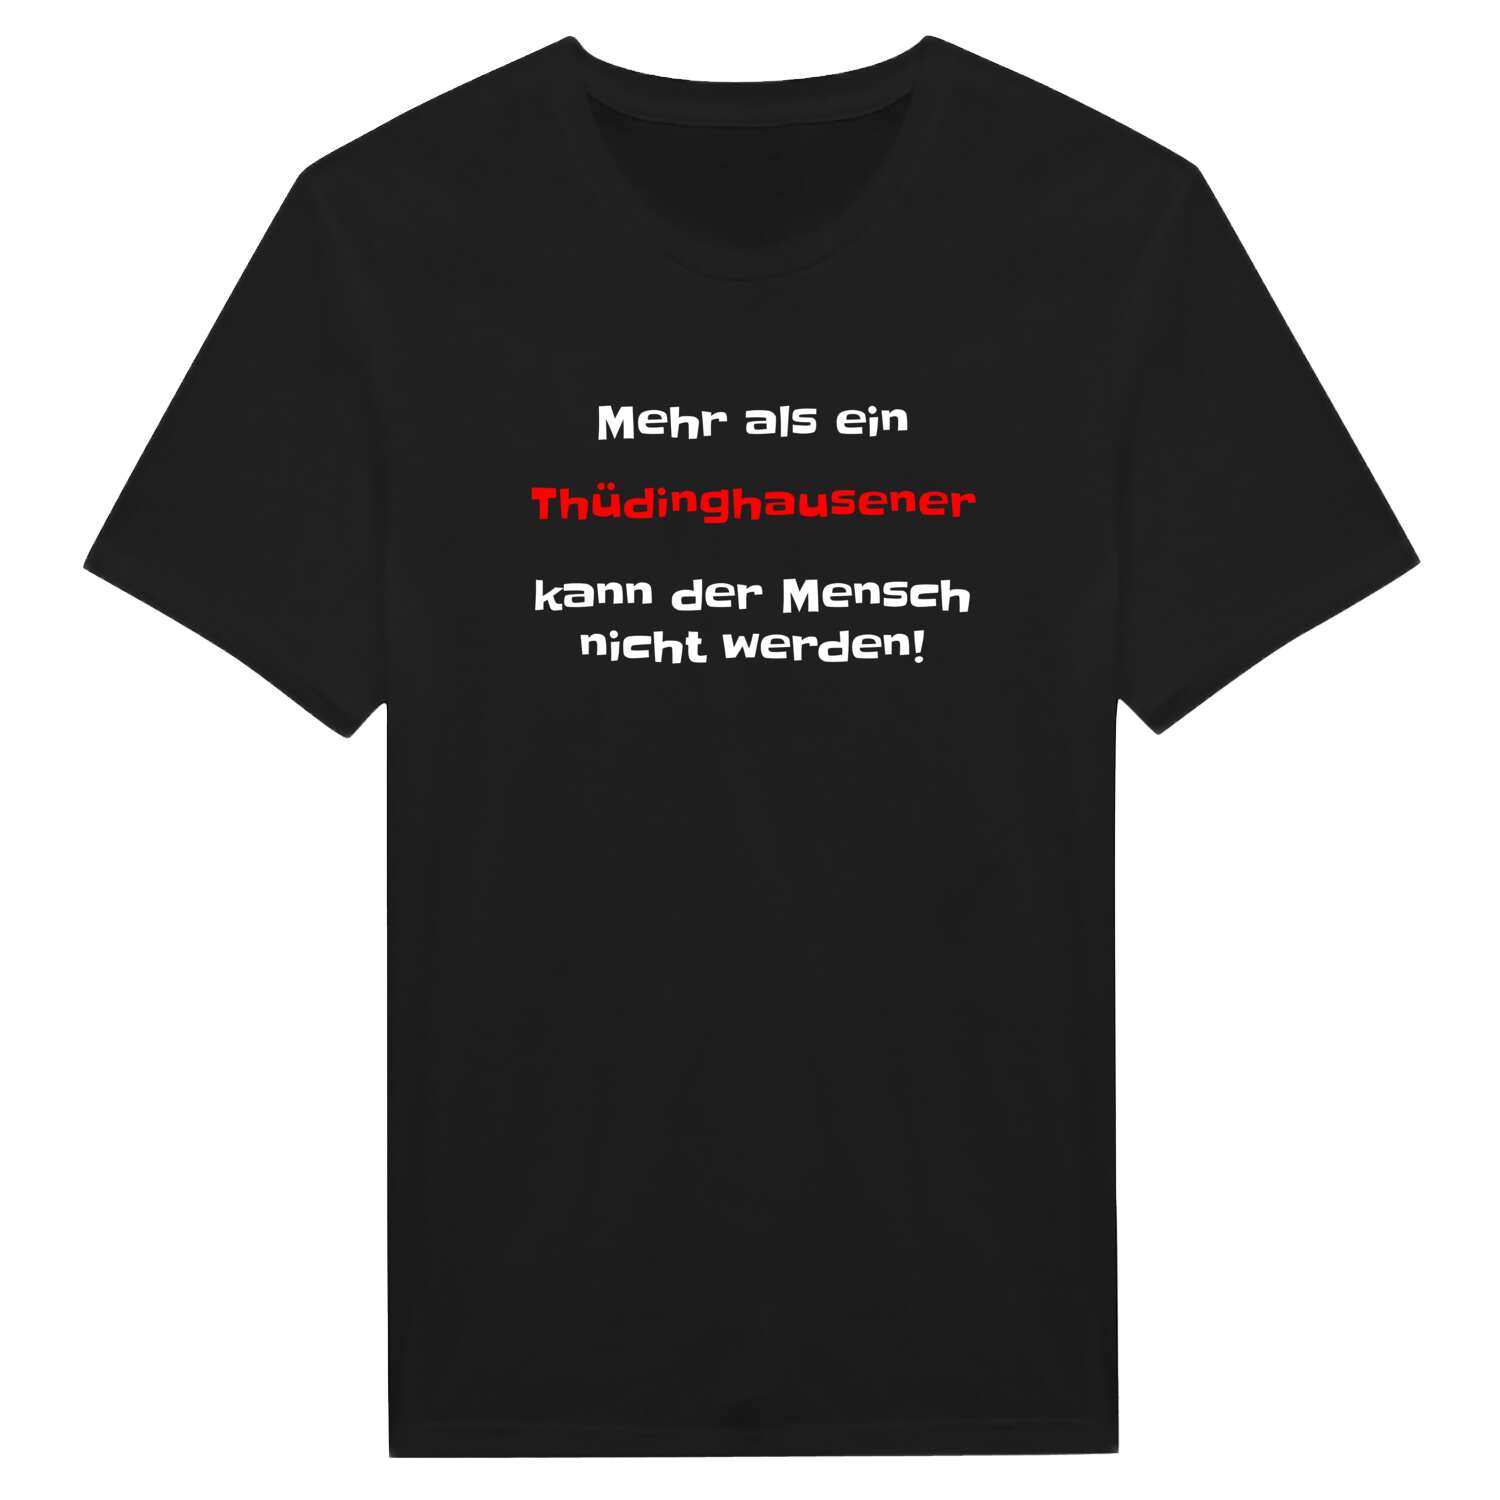 Thüdinghausen T-Shirt »Mehr als ein«